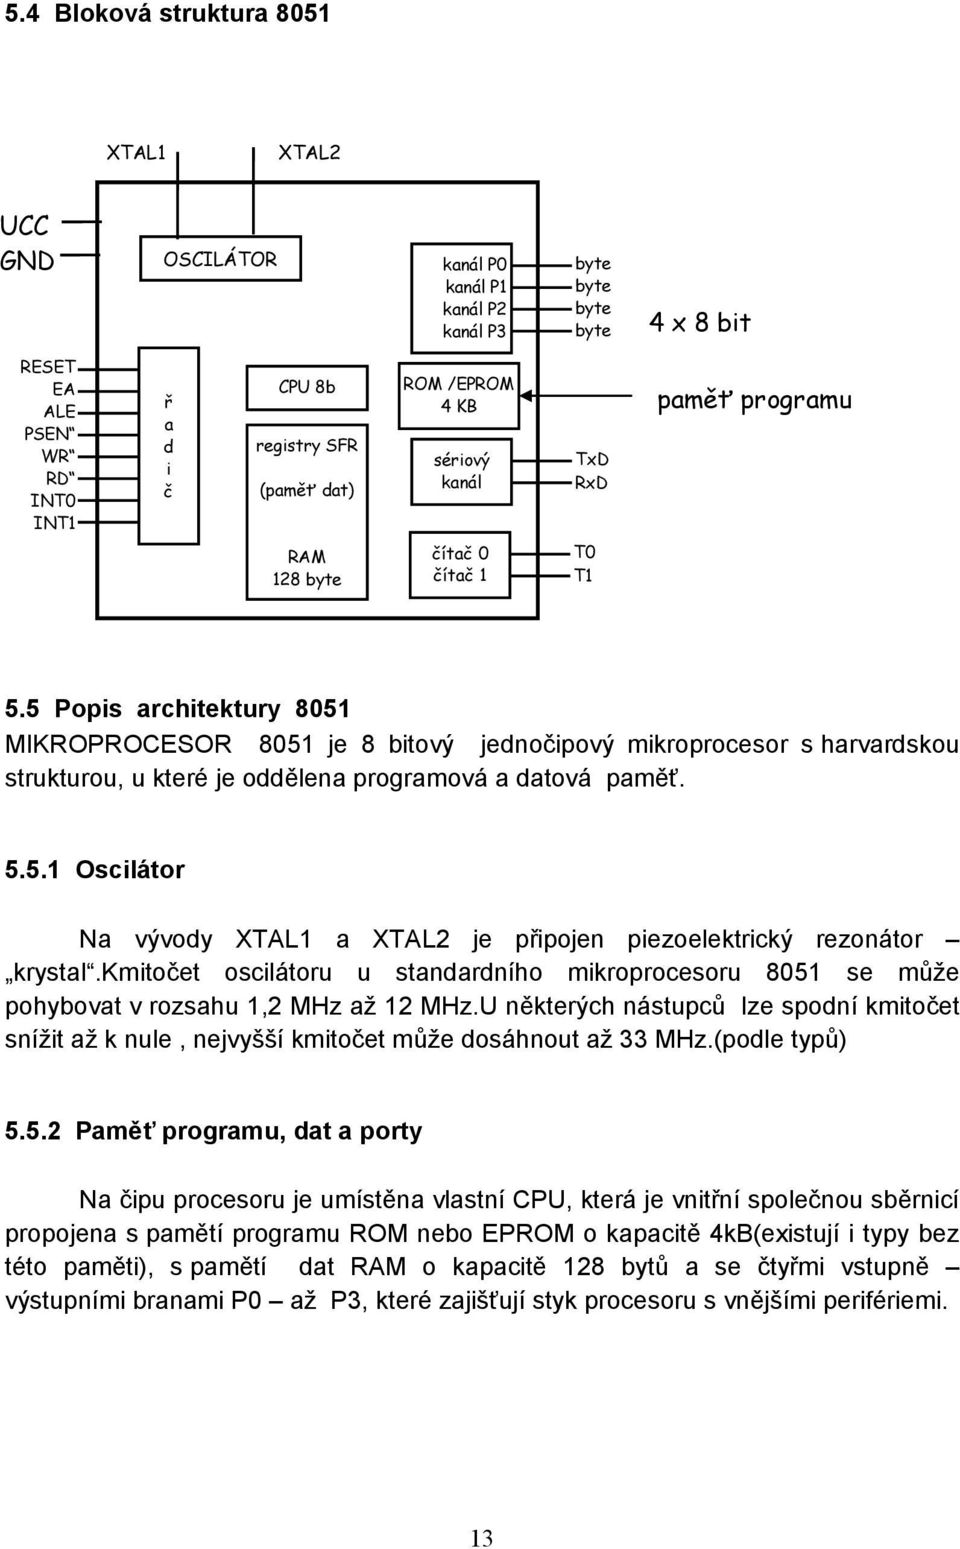 5 Popis architektury 8051 MIKROPROCESOR 8051 je 8 bitový jednočipový mikroprocesor s harvardskou strukturou, u které je oddělena programová a datová paměť. 5.5.1 Oscilátor Na vývody XTAL1 a XTAL2 je připojen piezoelektrický rezonátor krystal.